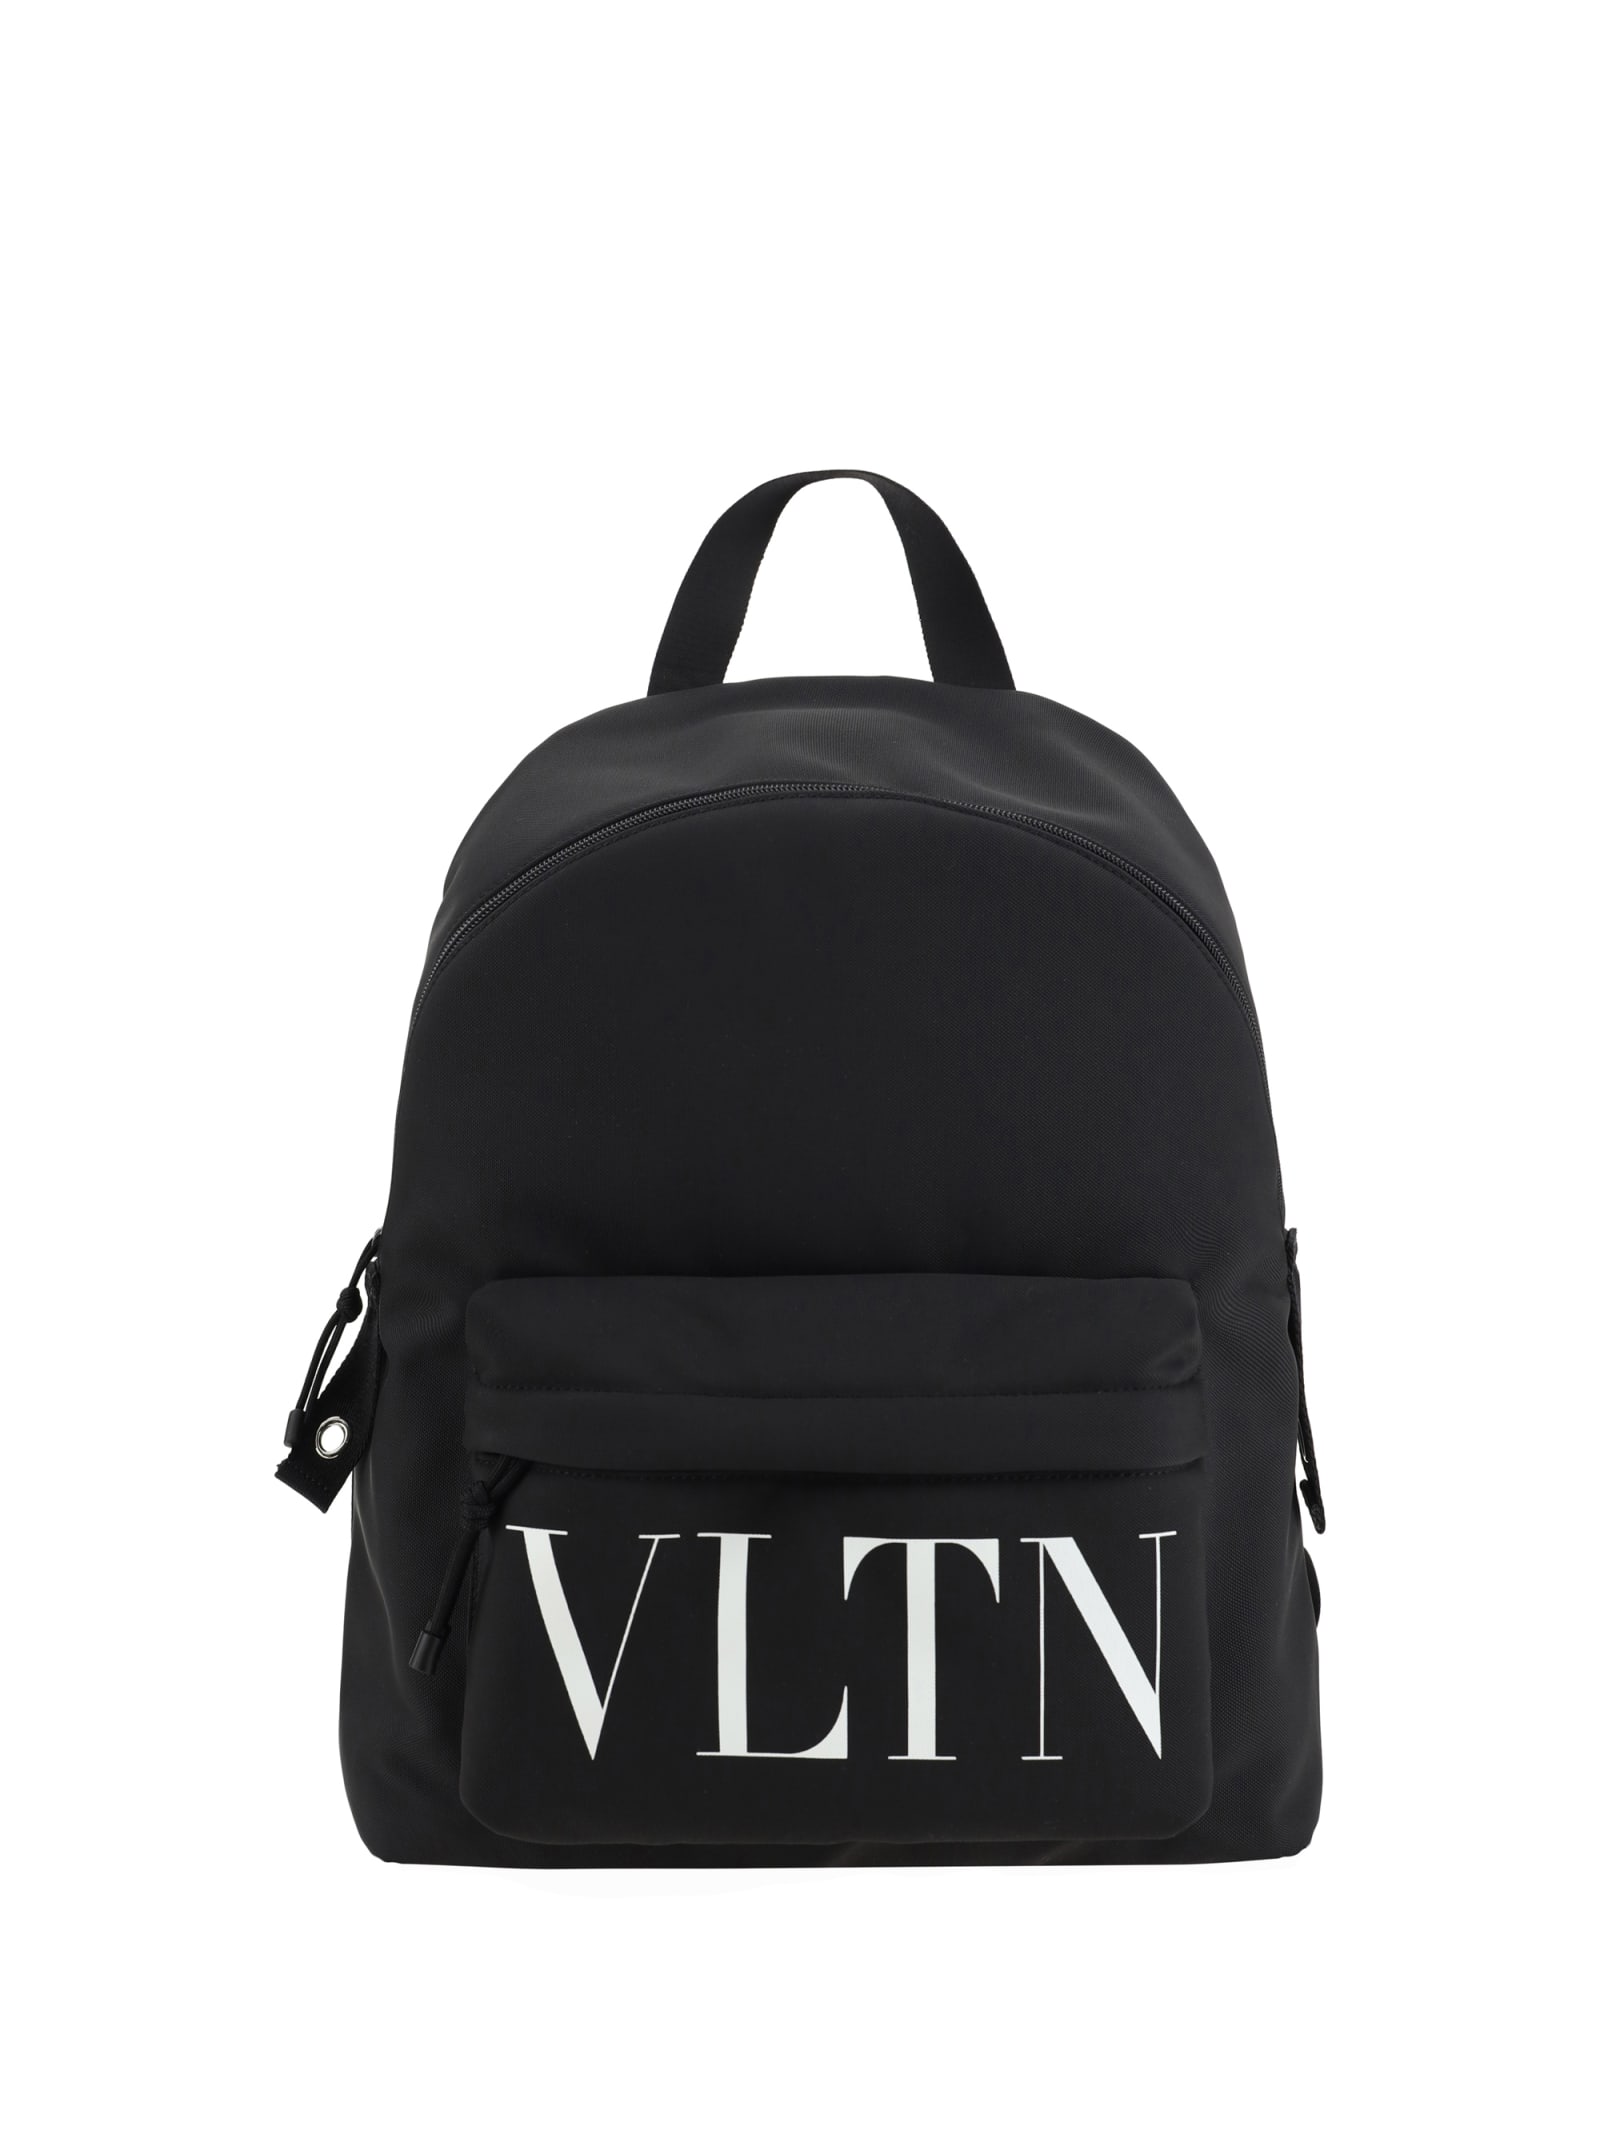 Valentino Garavani Vltn Backpack In Black